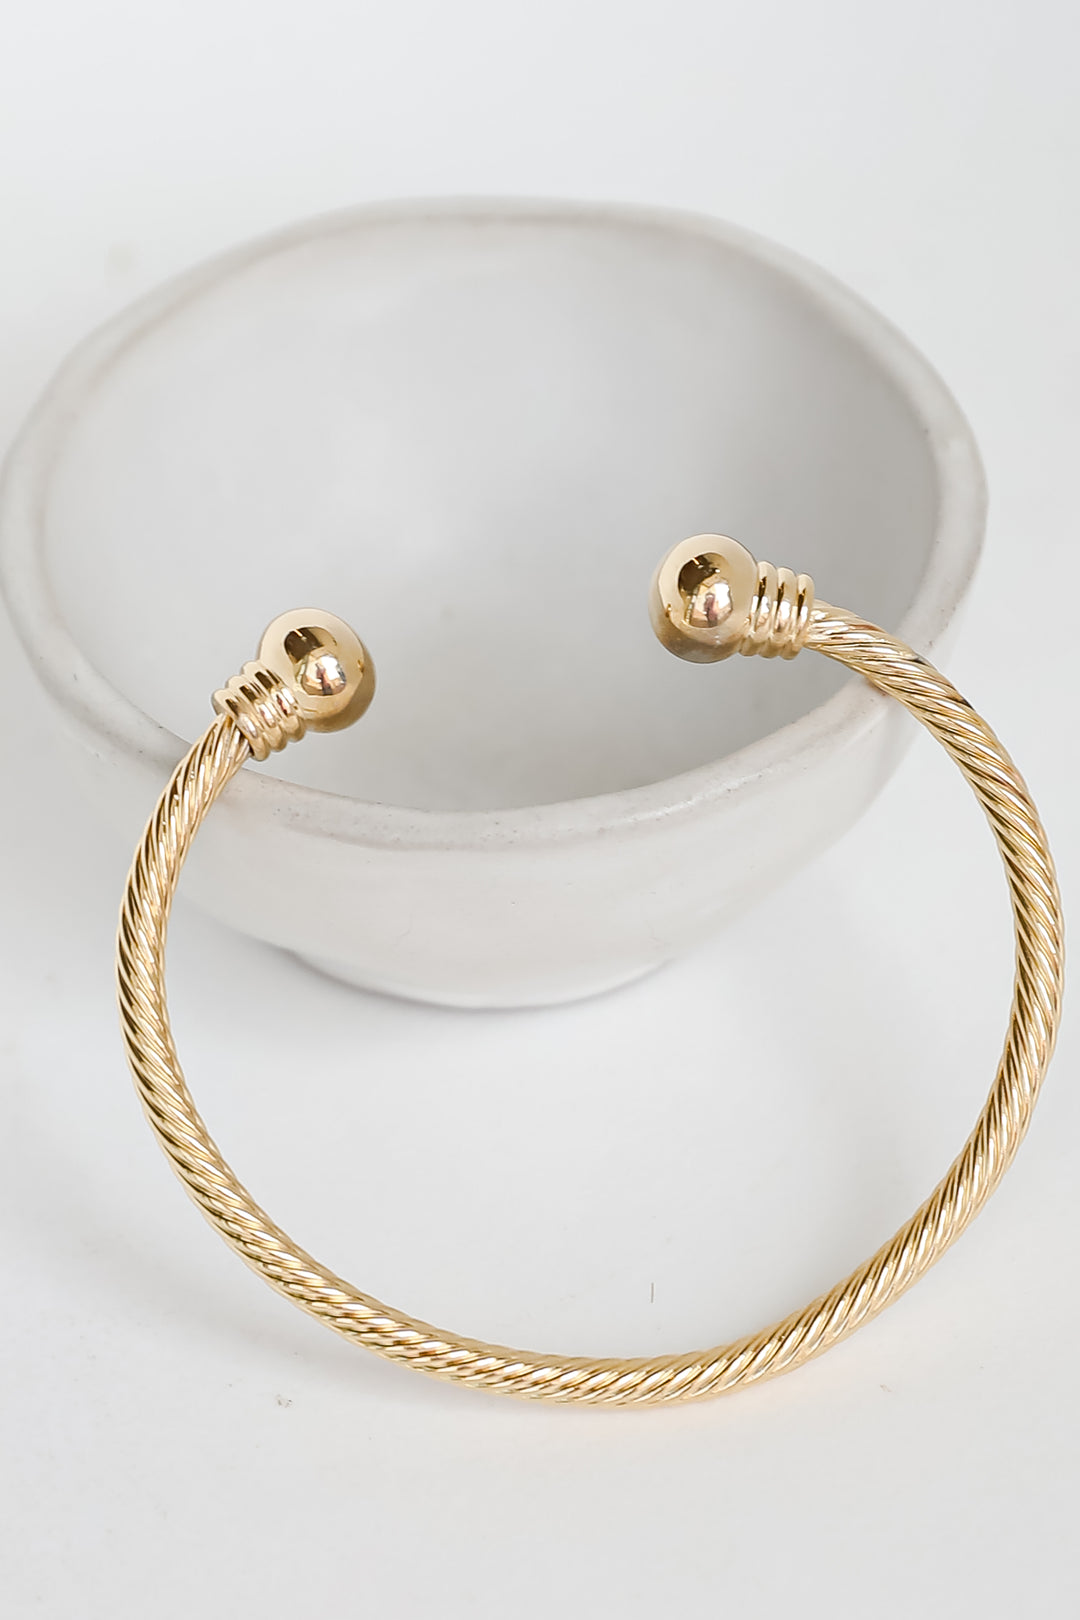 Brynne Gold Cuff Bracelet dainty jewelry